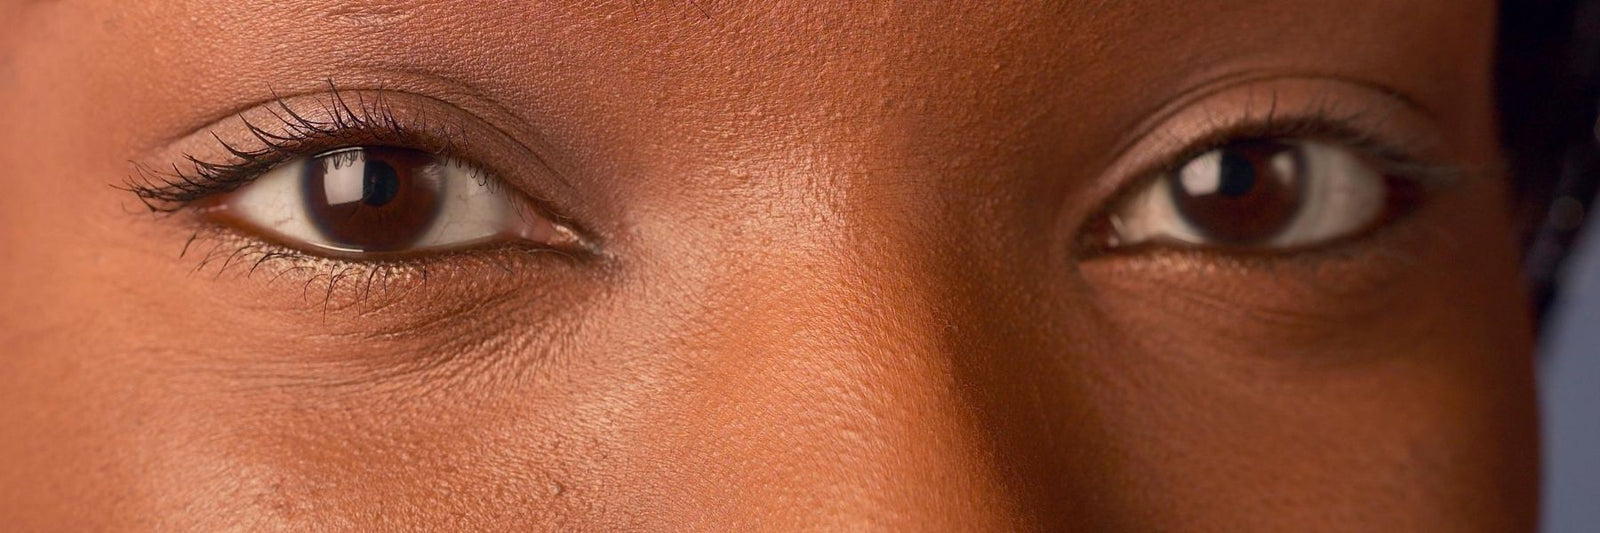 SOS Yeux fatigués : les soins contour des yeux naturels à découvrir -  L'atelier candide